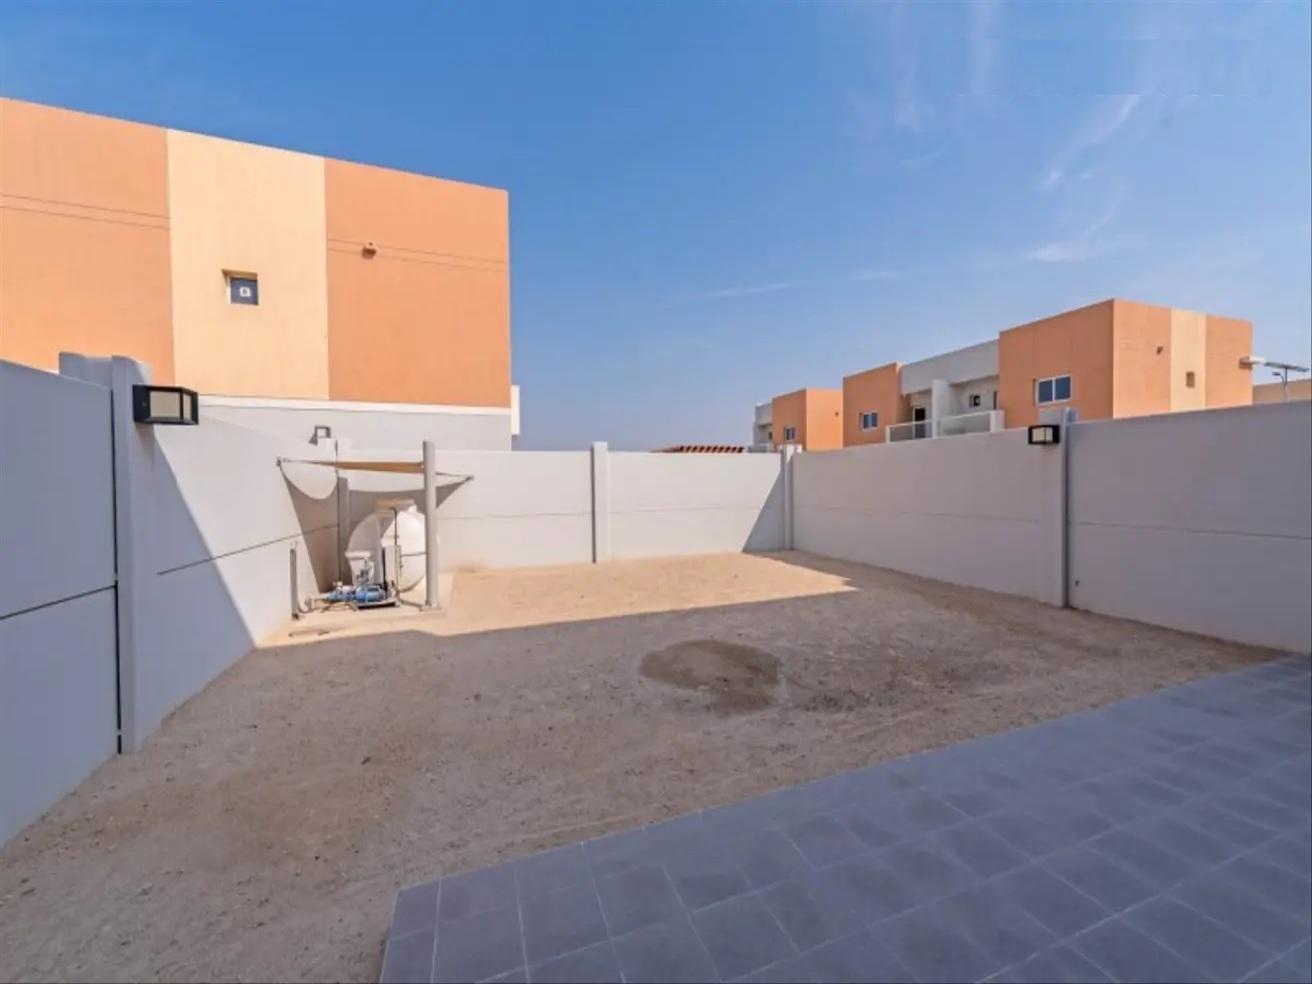 Real Estate_Villas for Rent_Al Samha